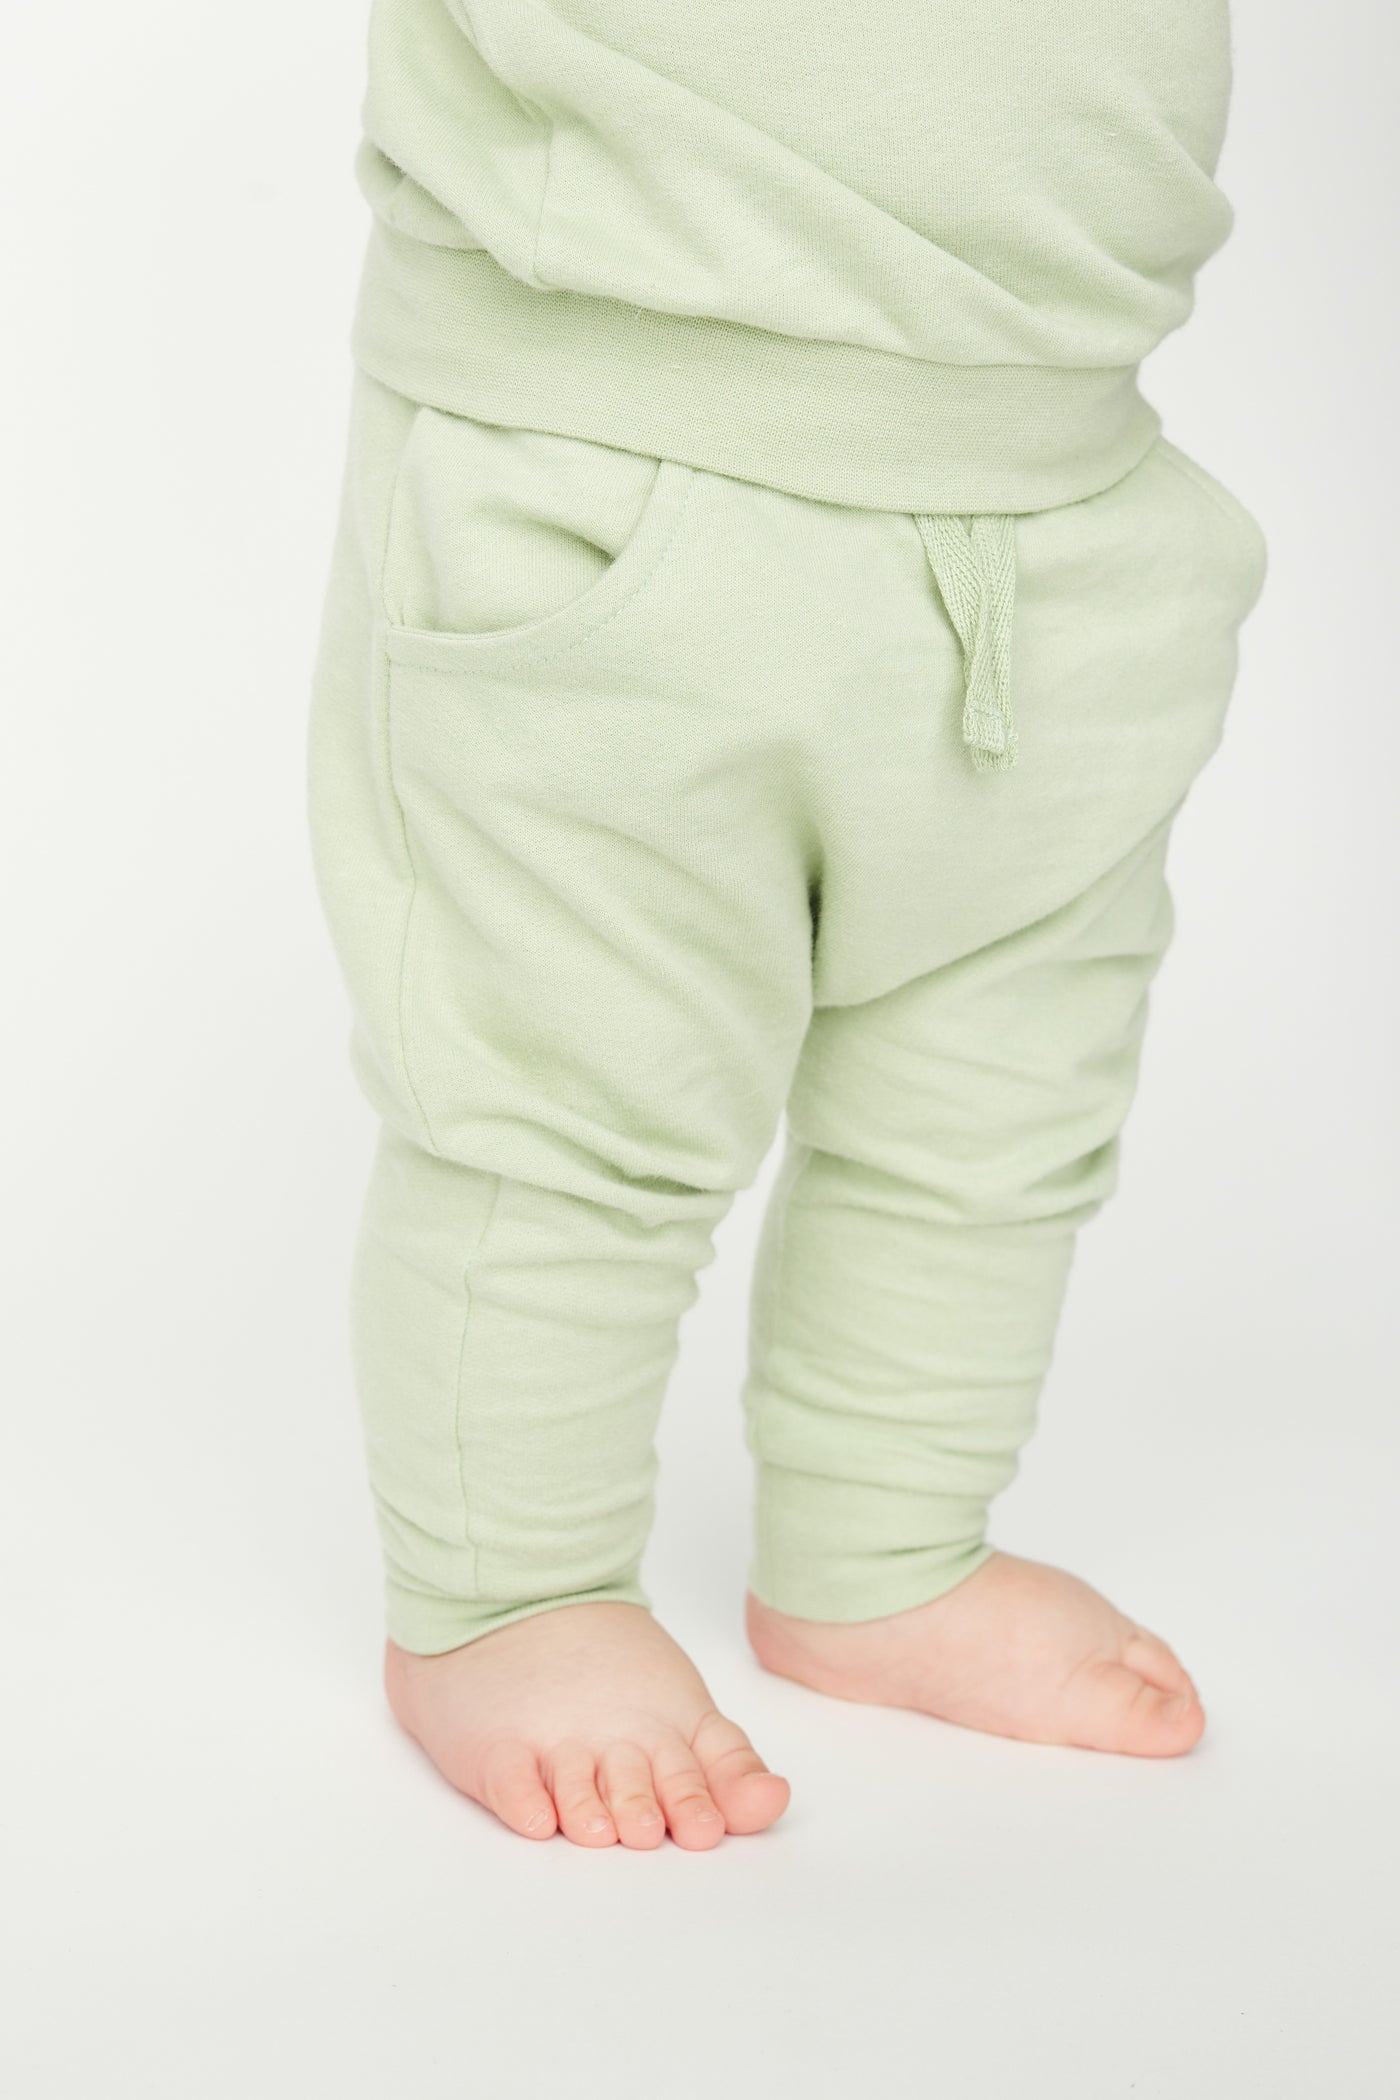 Grønne sweatpants med elastisk talje og lommer i GOTS-certificeret økologisk bomuld fra Organic Lullaby. 